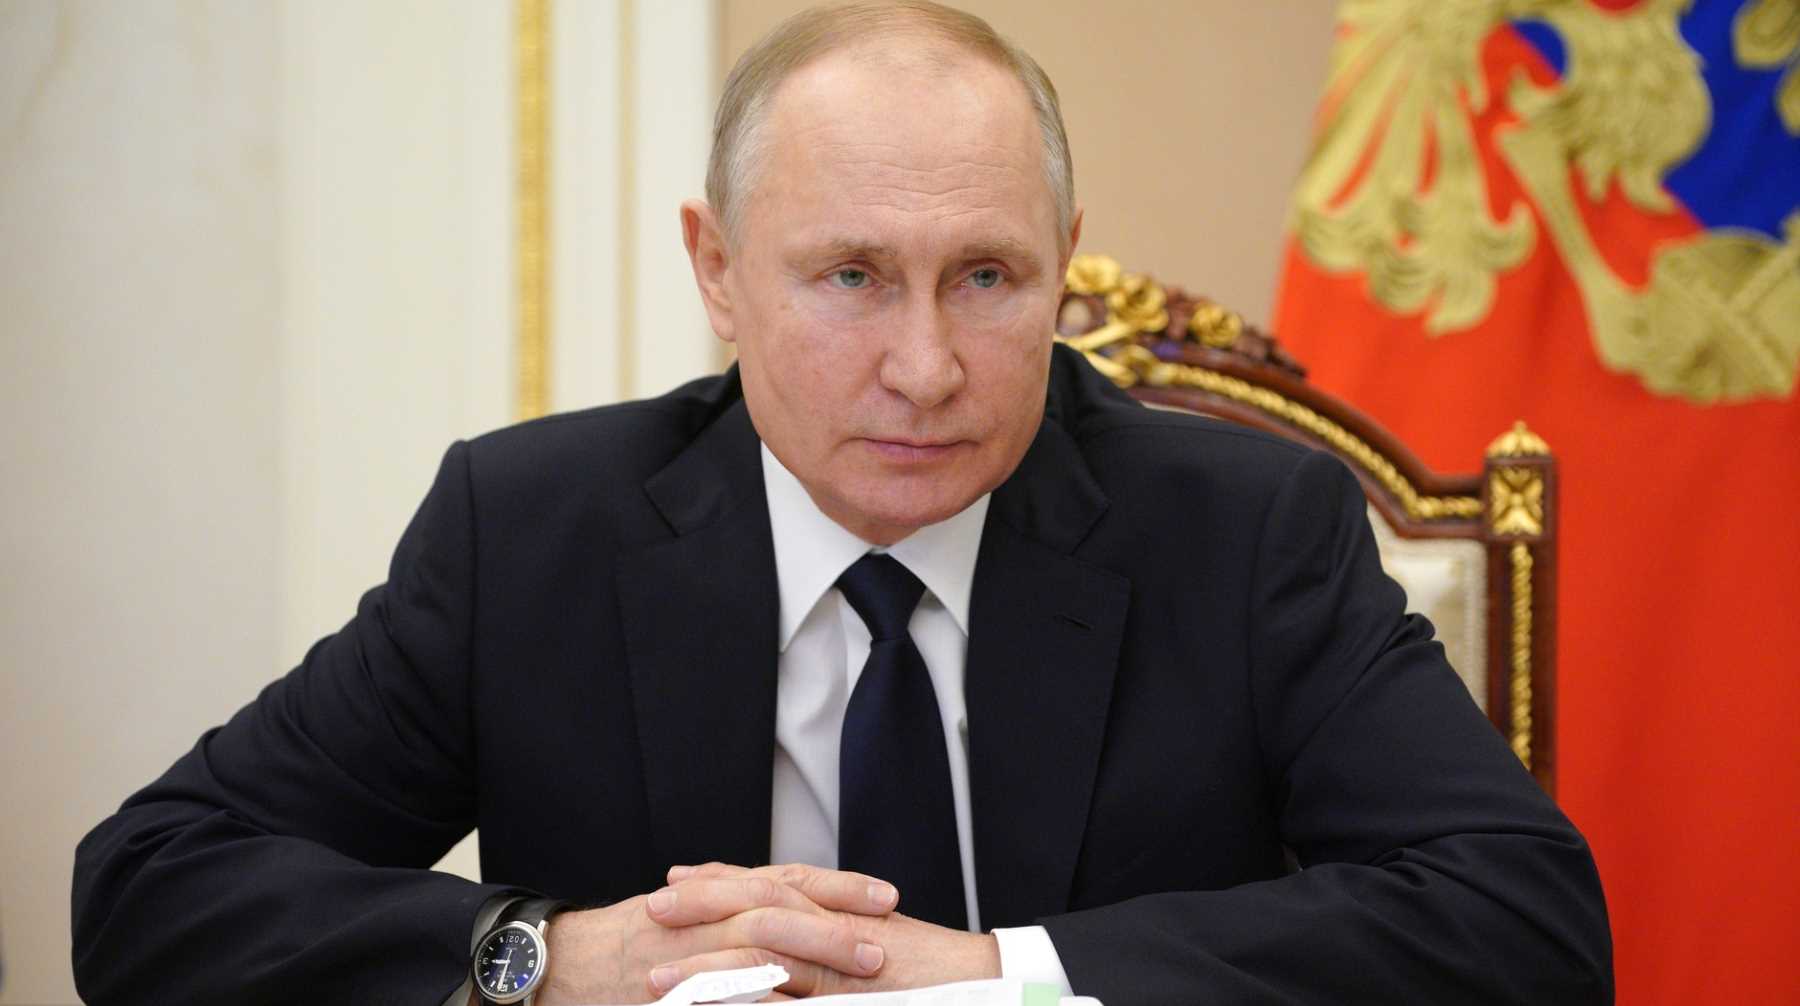 В этом году глава государства обратится к Федеральному собранию 21 апреля Фото: © Global Look Press / Kremlin Pool